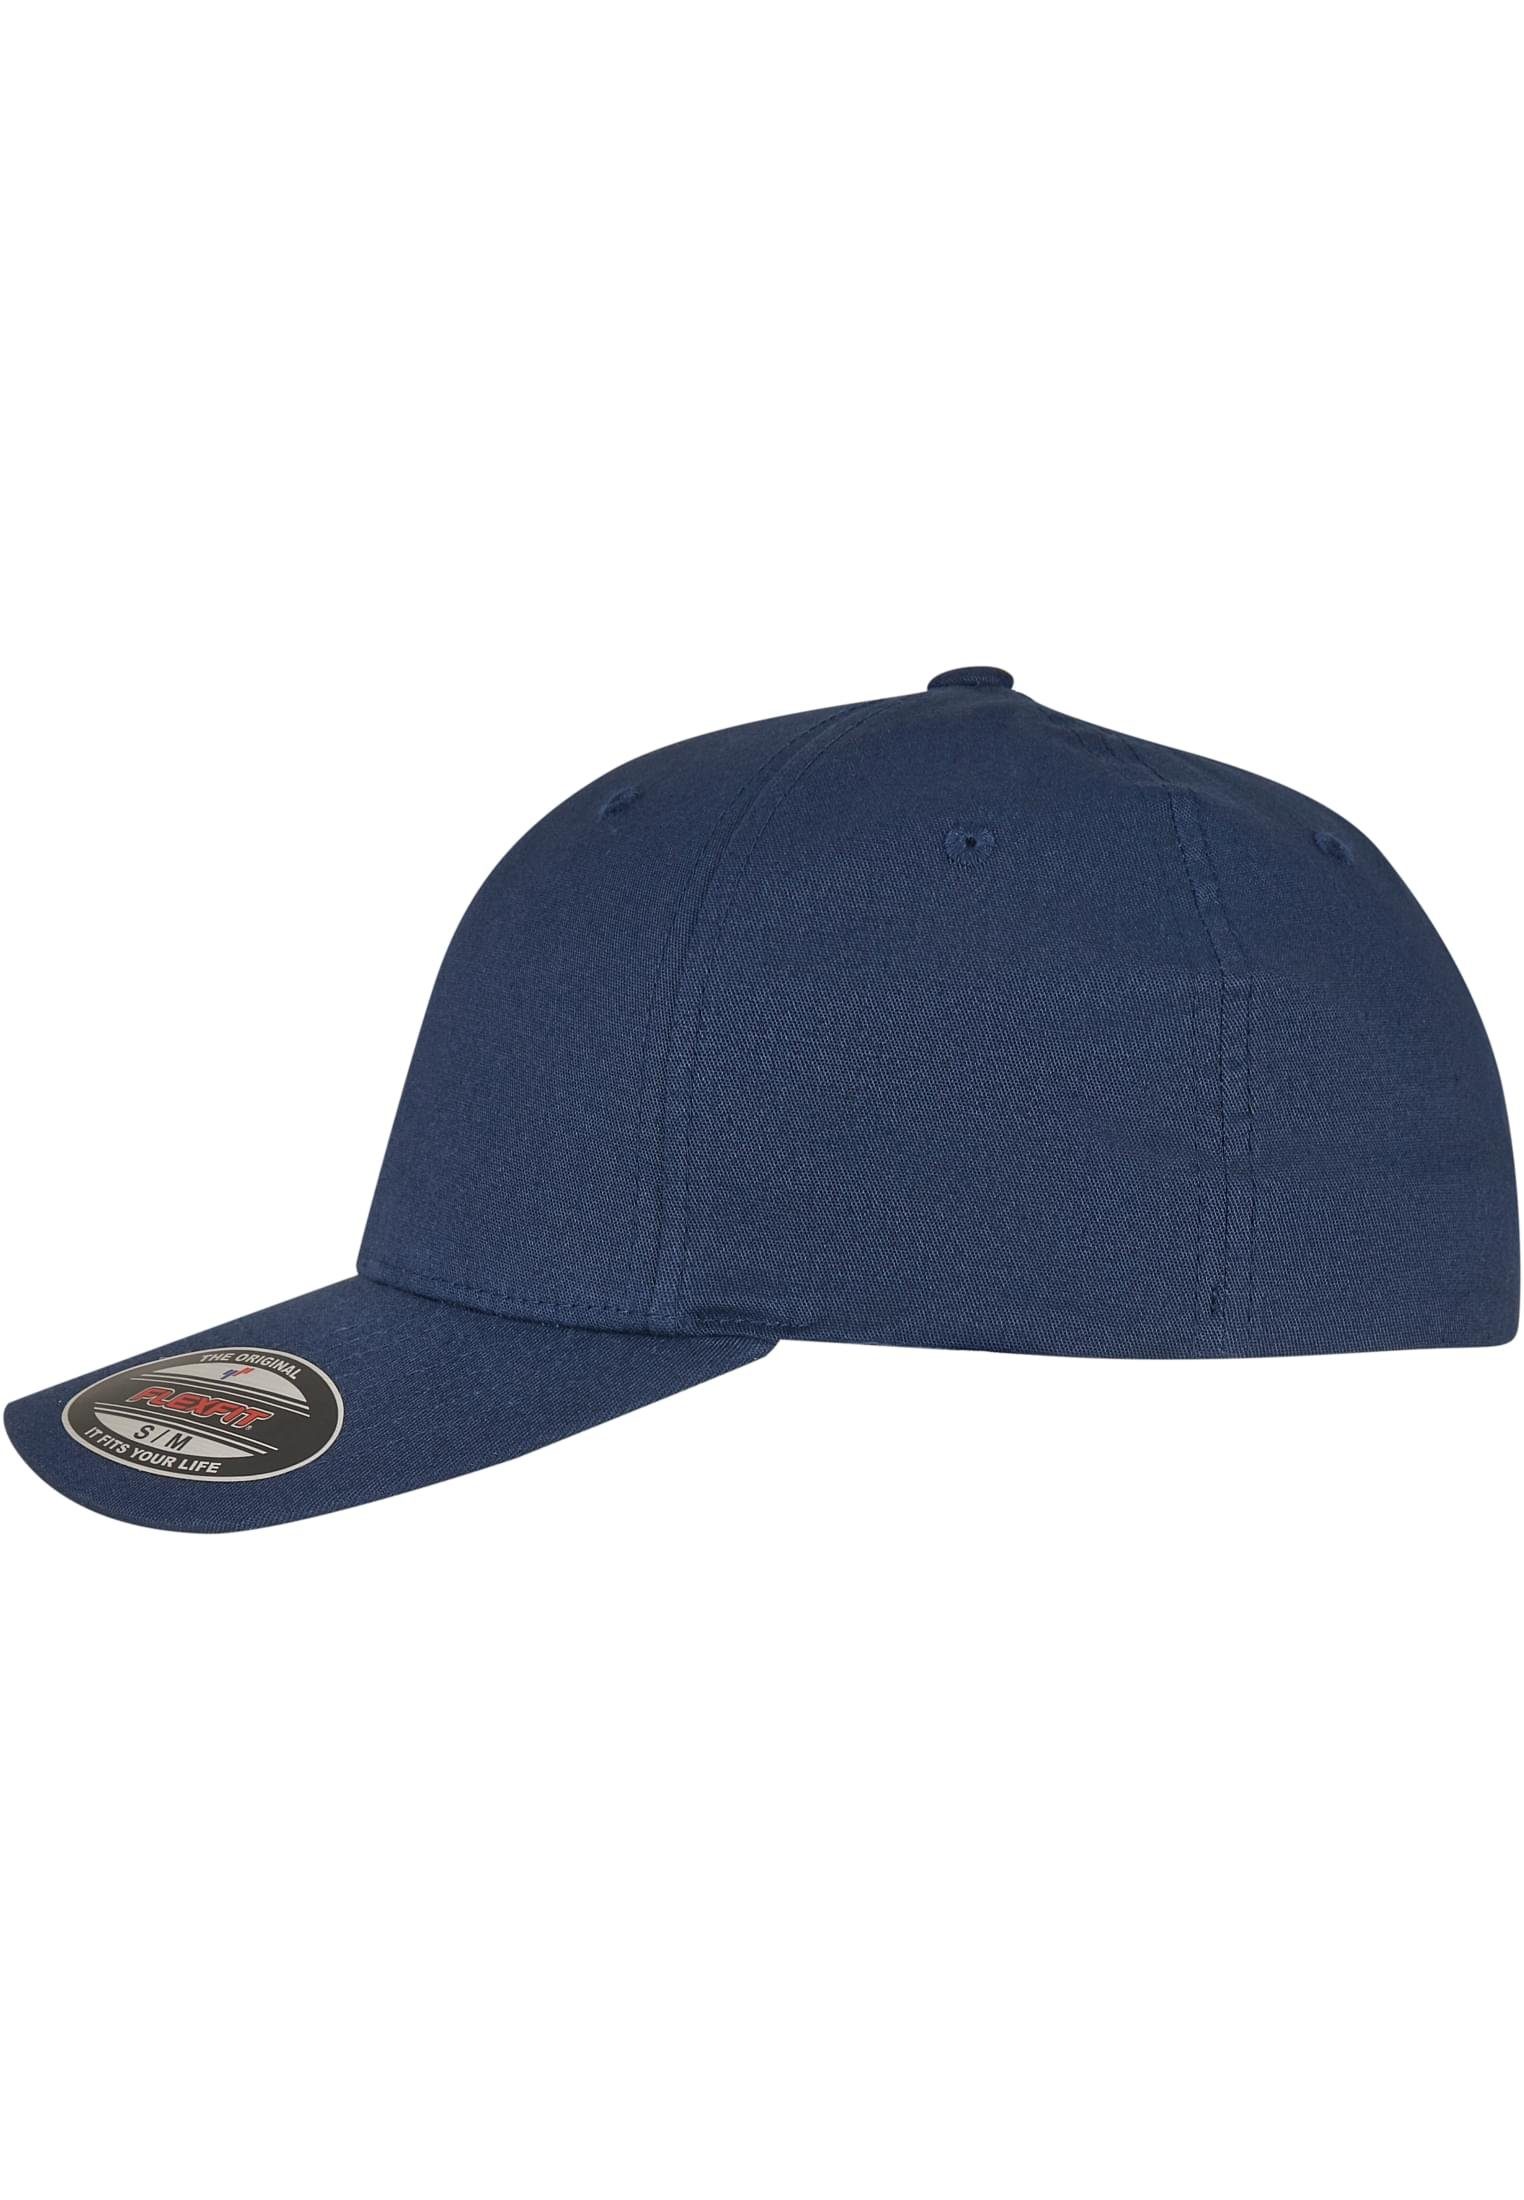 COTTON CAP Cap Flex V-FLEXFIT® TWILL navy Accessoires Flexfit